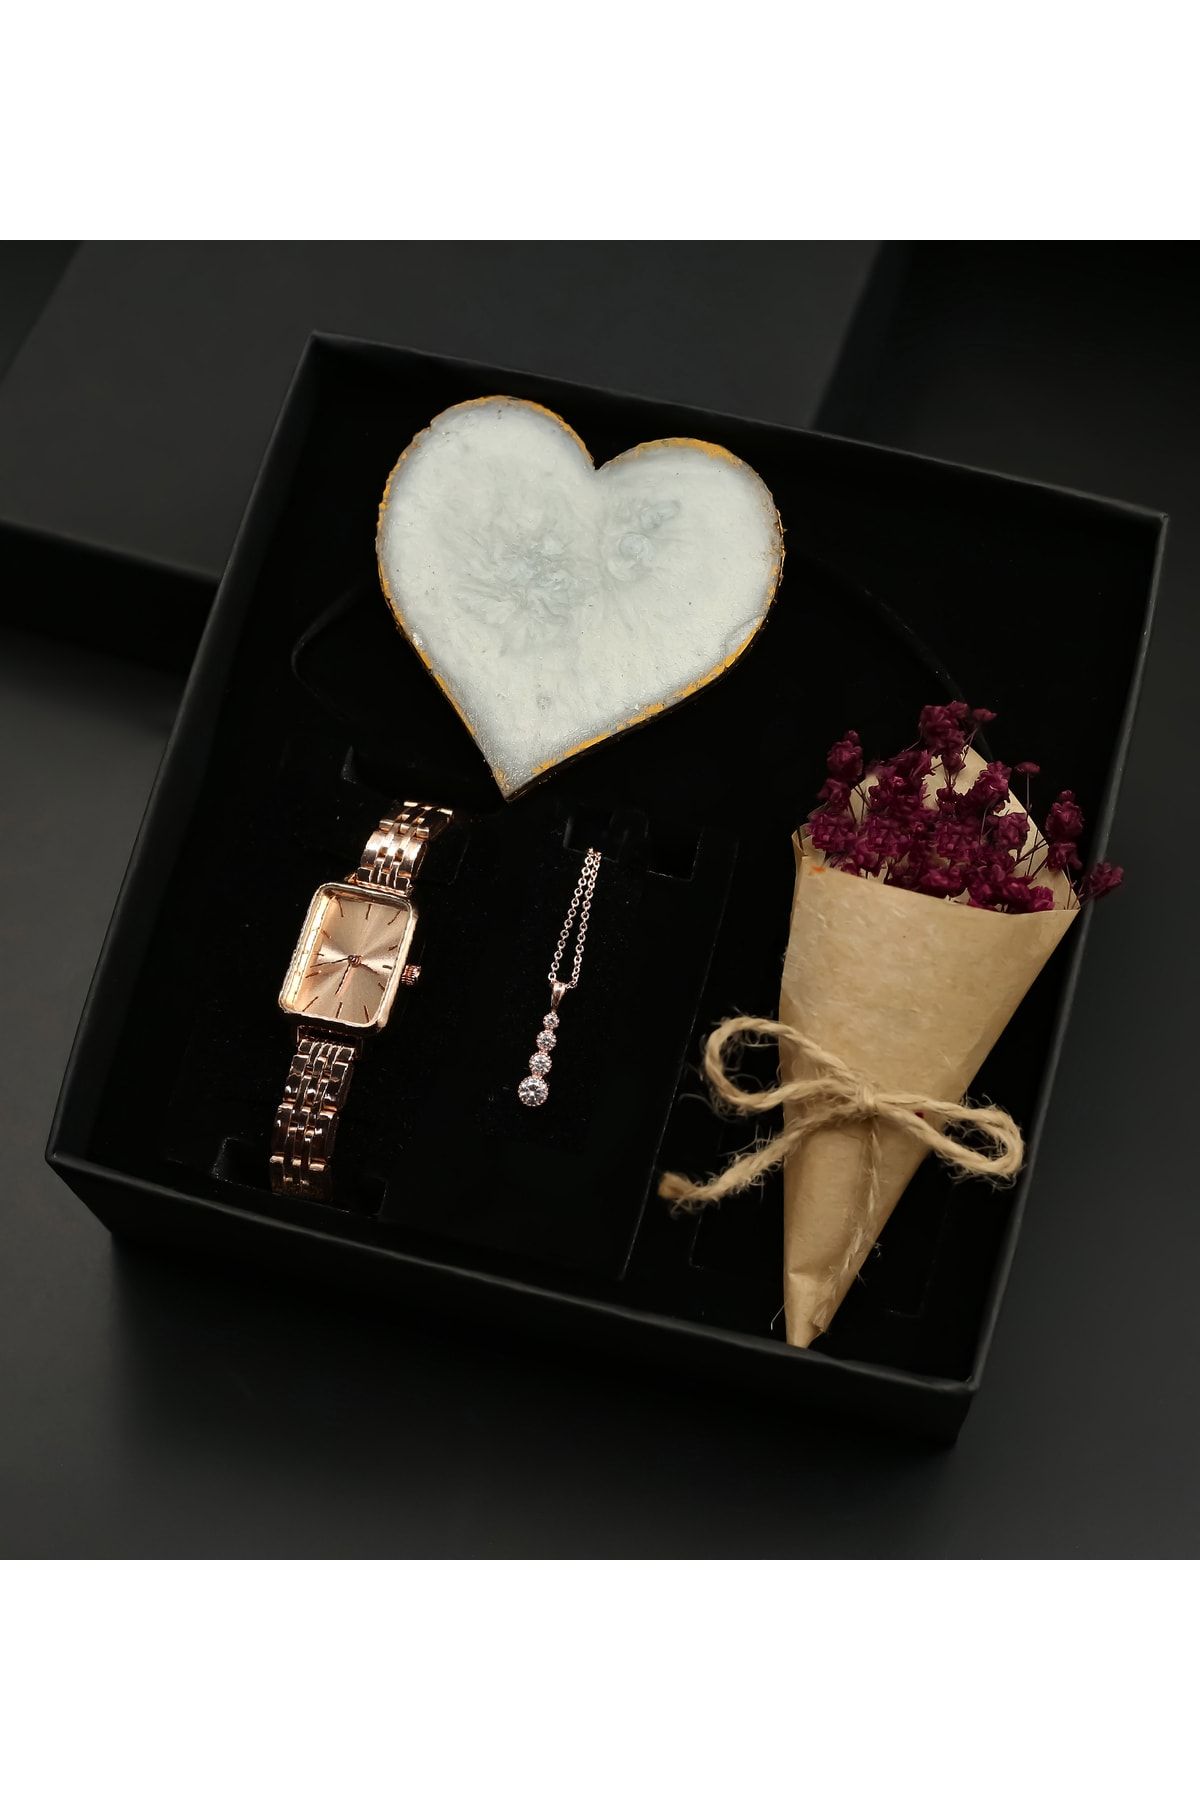 Hsport Sevgiliye Özel Kutuda Mesajlı Plaka&rose Gold Mıknatıslı Kadın Saati&zirkon Kolye&çiçek Hediye Seti